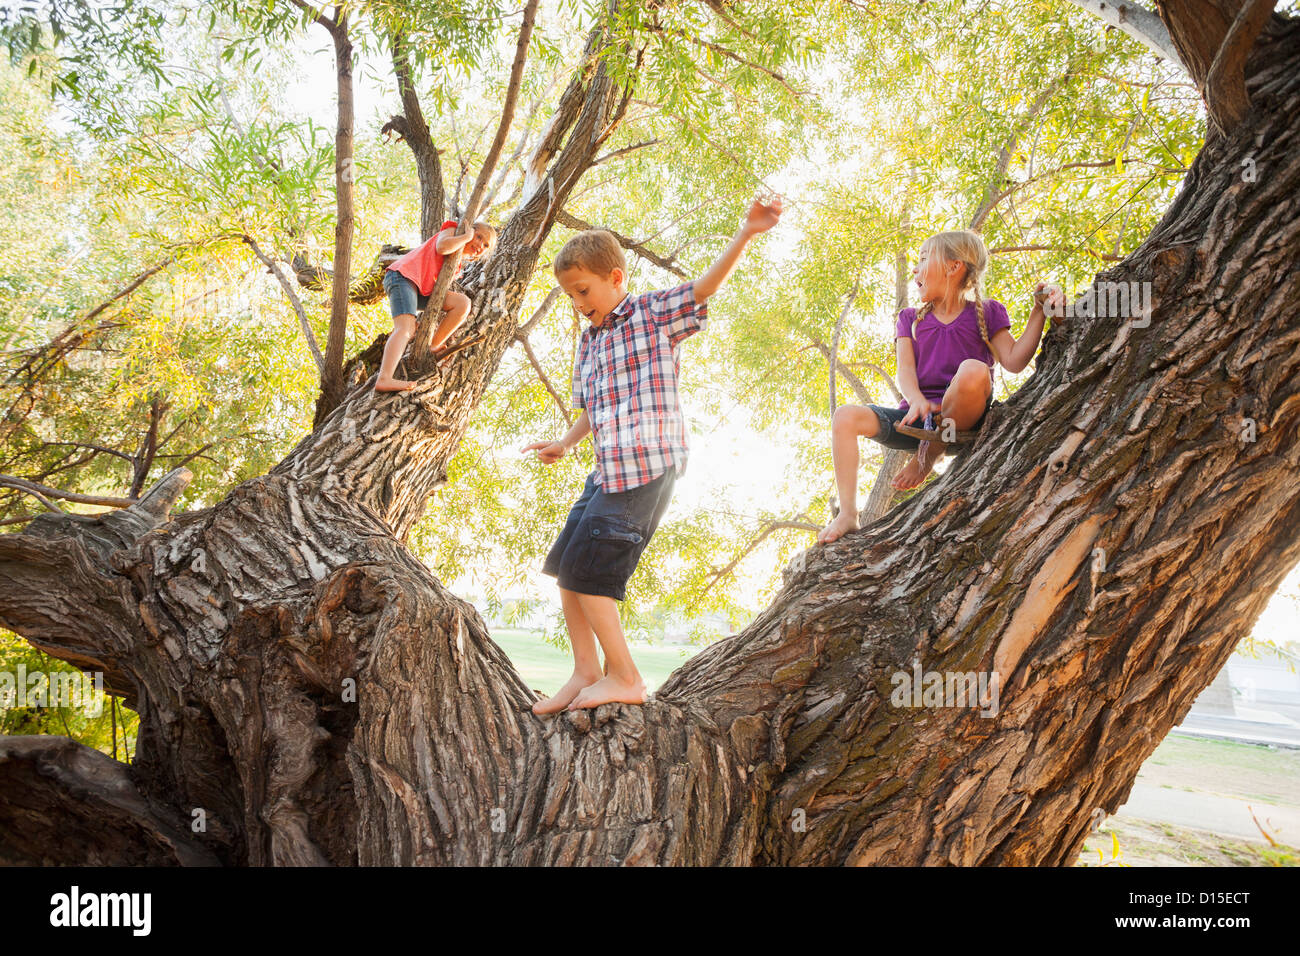 USA, Utah, Lehi, Three kids (4-5, 6-7) playing in huge tree Stock Photo